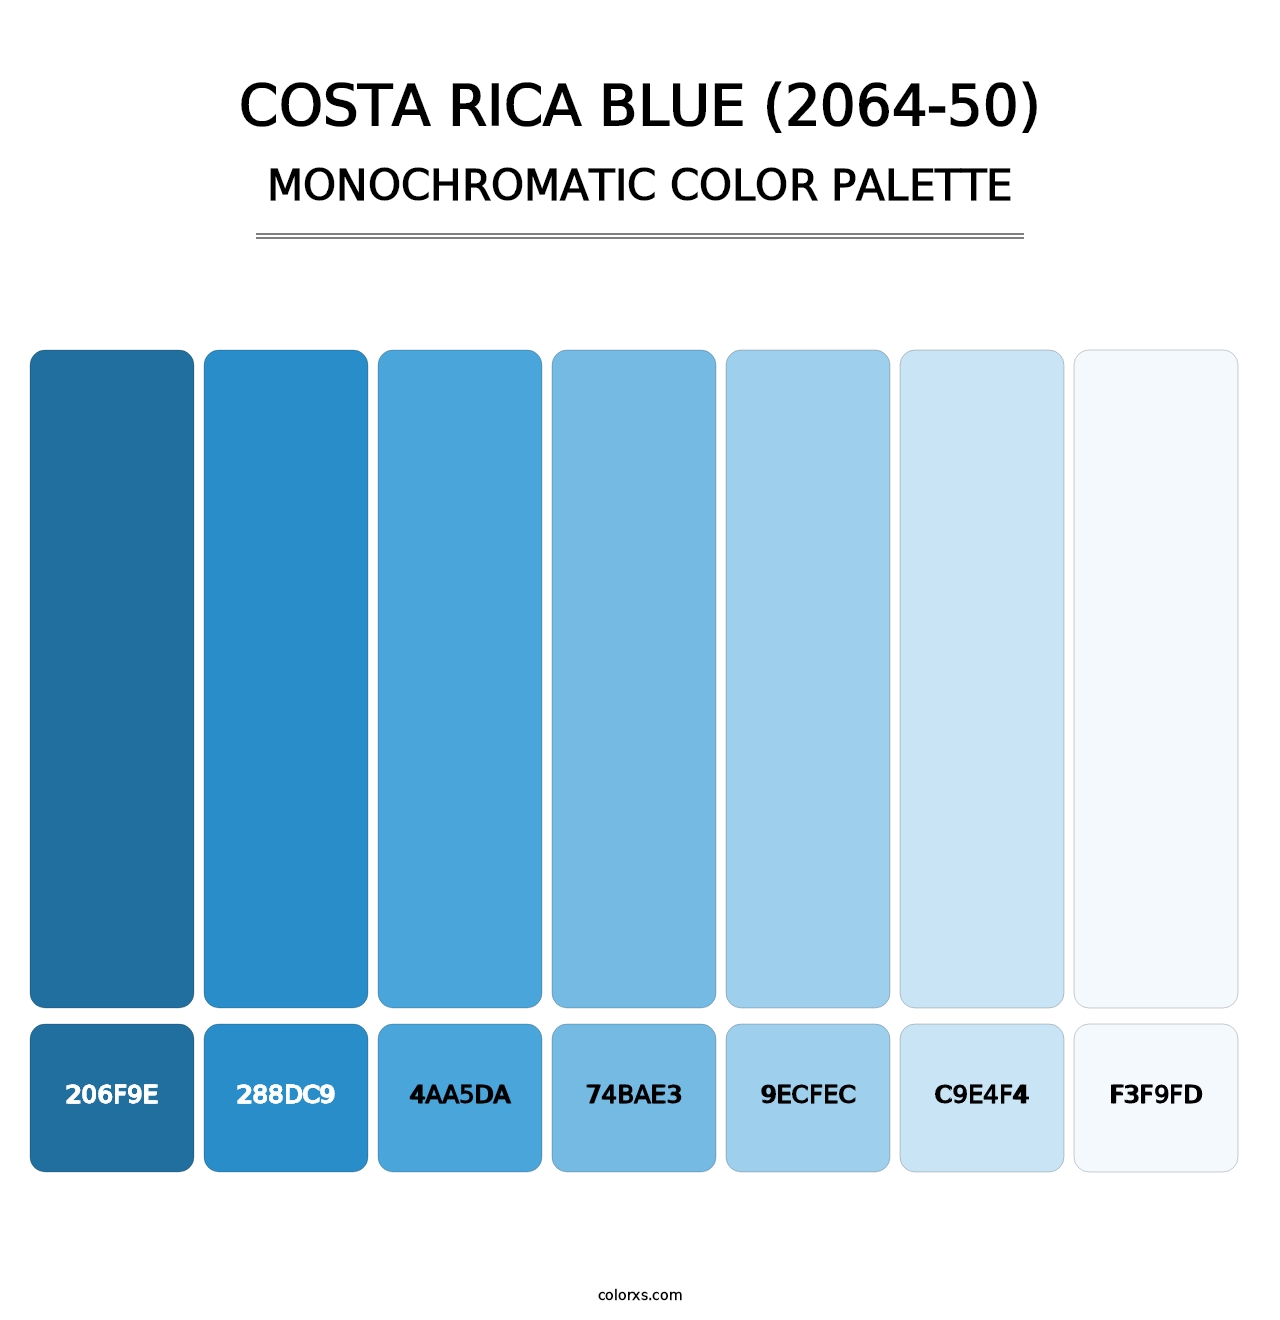 Costa Rica Blue (2064-50) - Monochromatic Color Palette